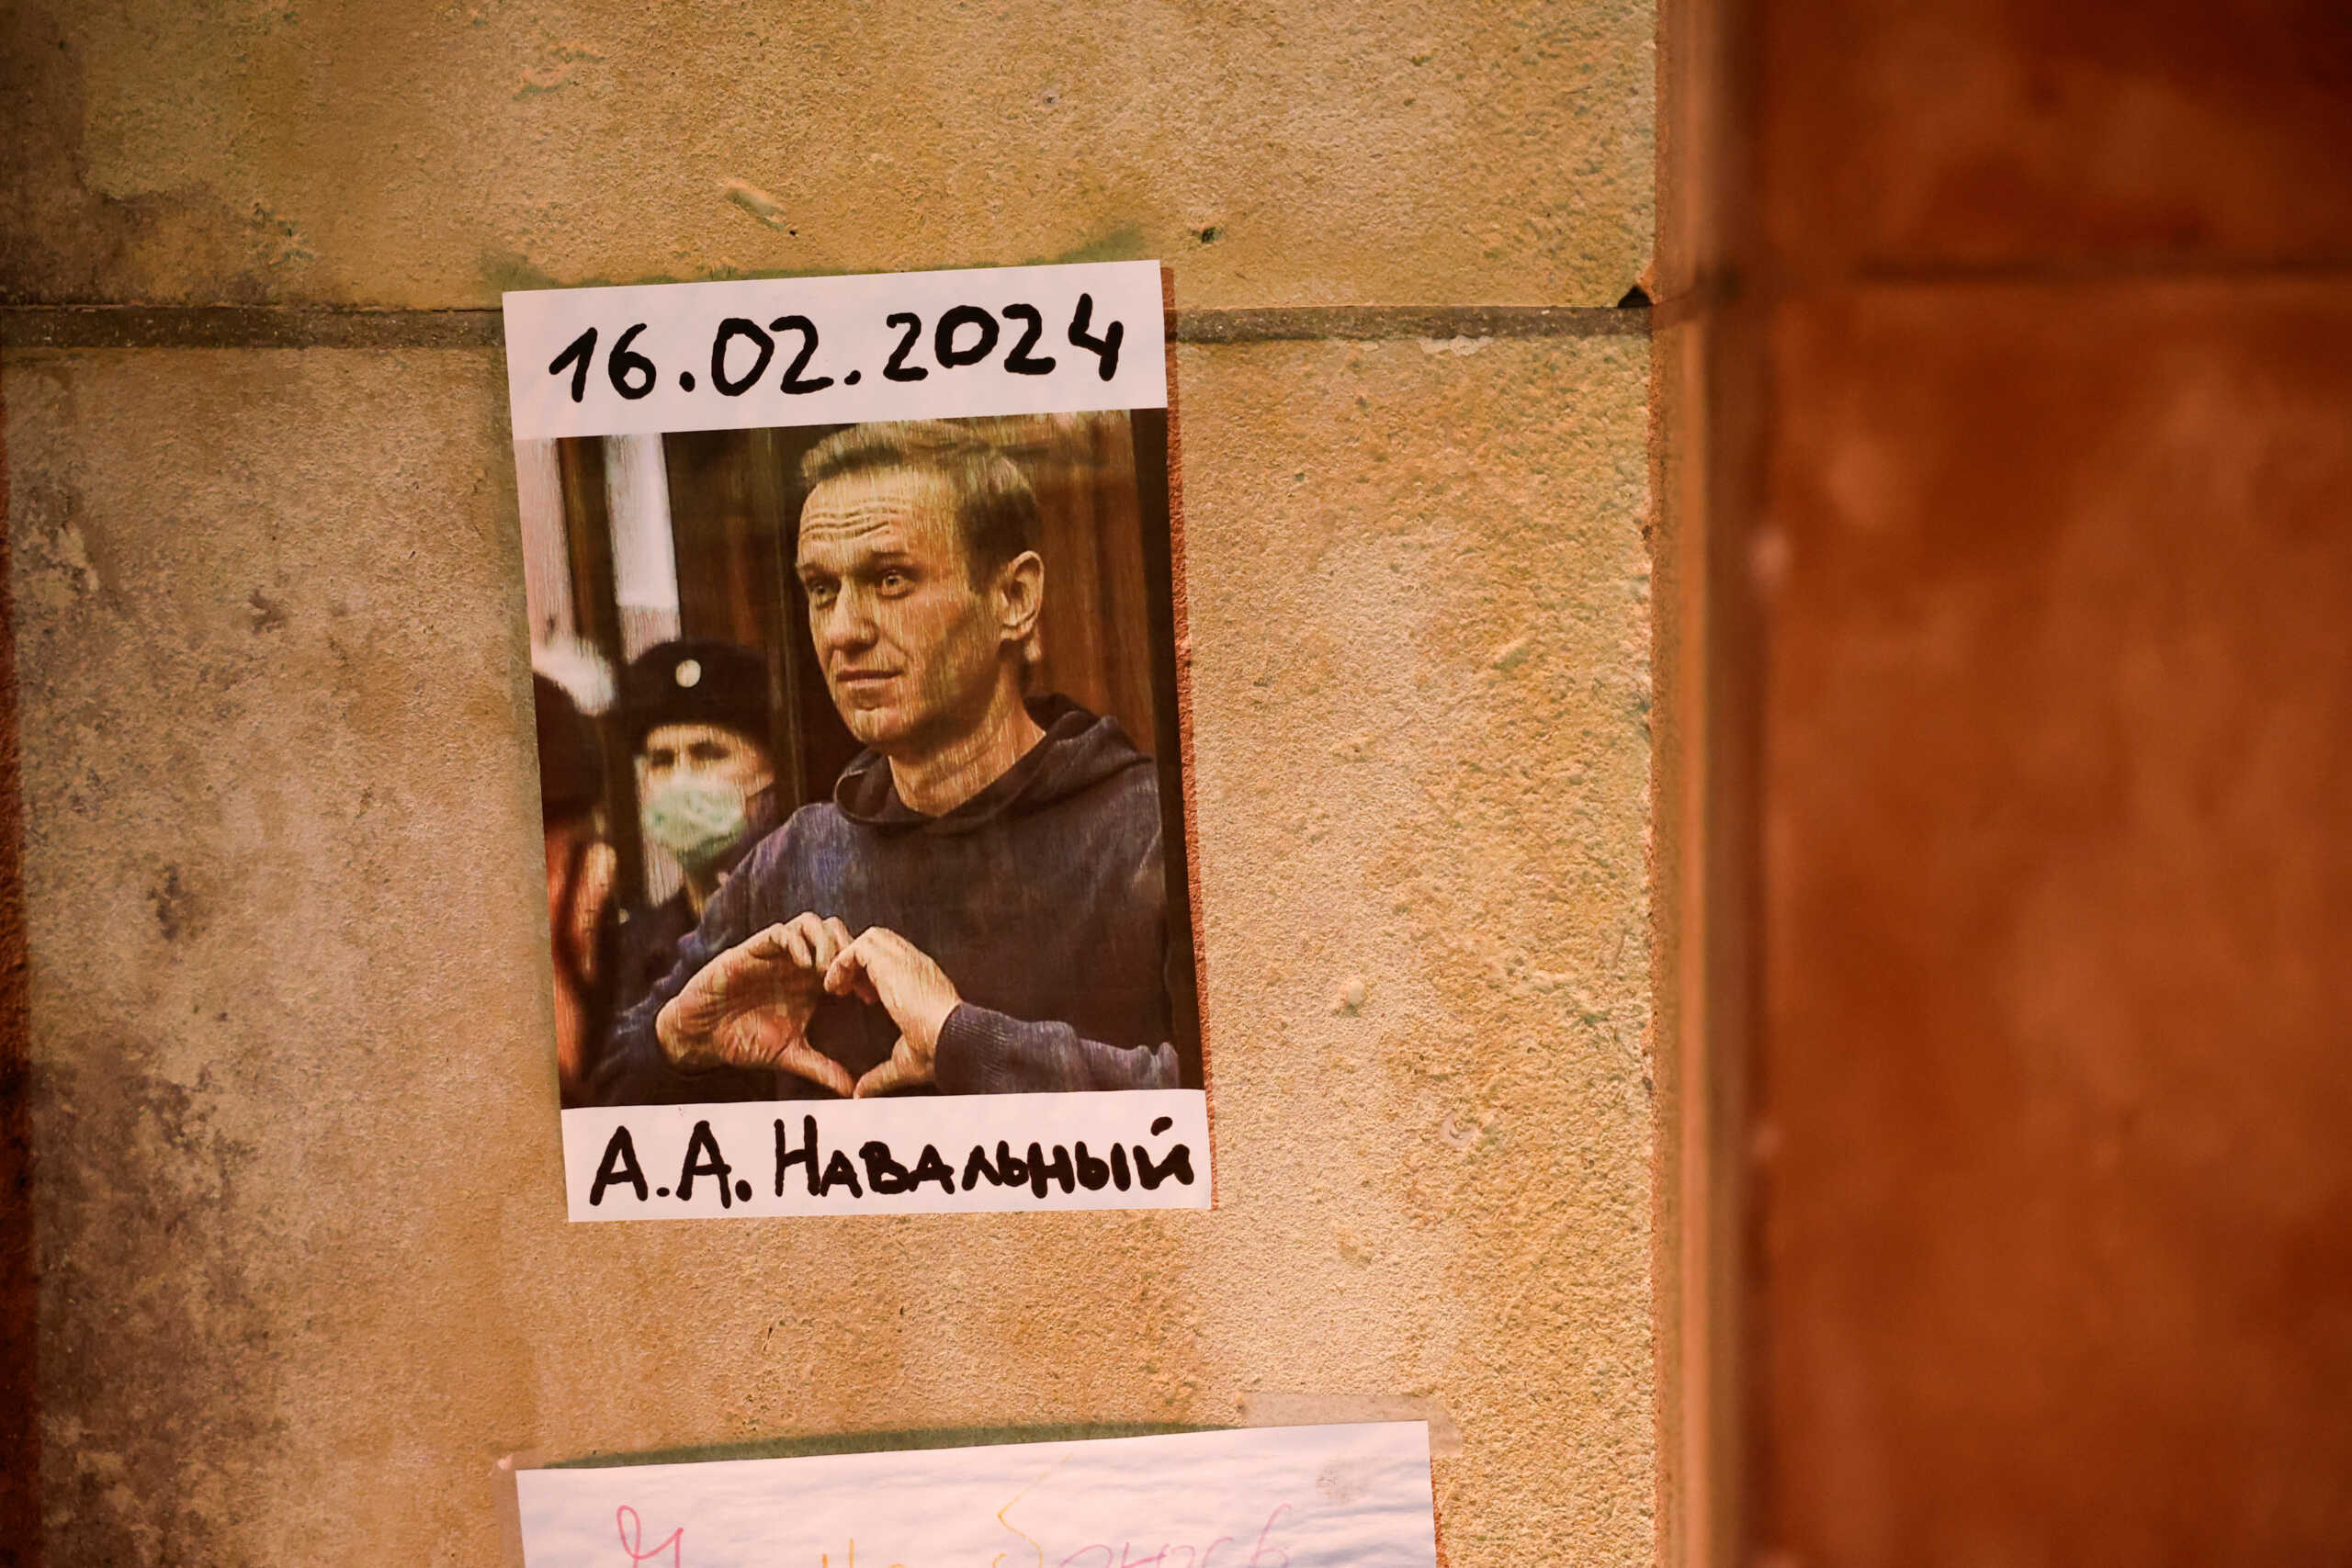 Η Γαλλία απαιτεί ανεξάρτητη και εις βάθος έρευνα για τον θάνατο του Αλεξέι Ναβάλνι στις ρωσικές φυλακές